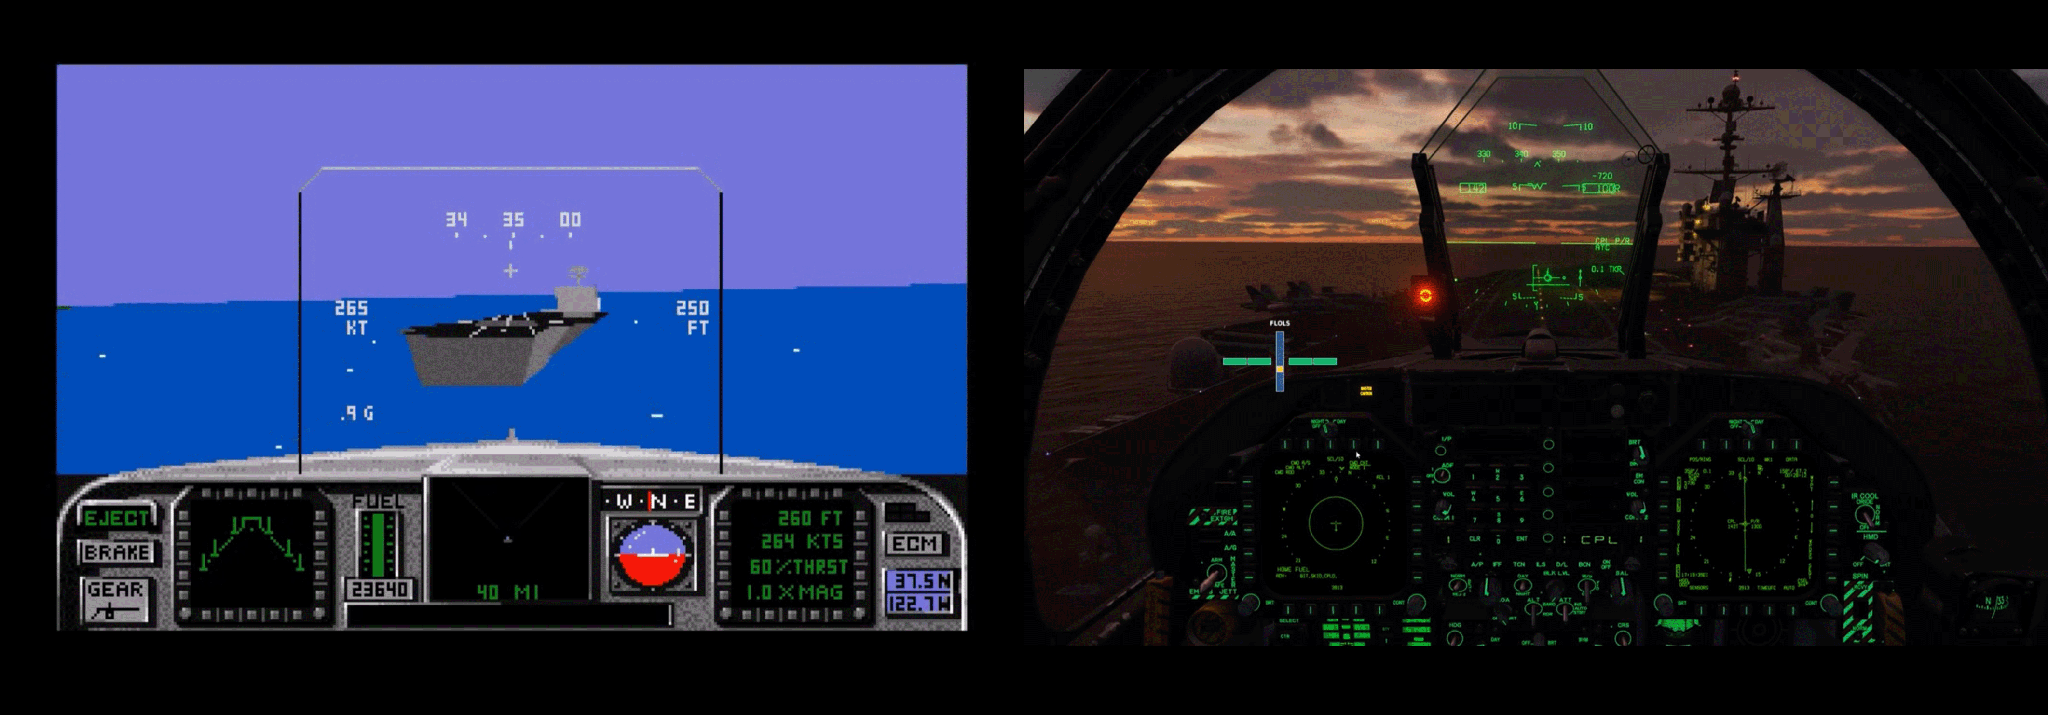 Mehr als 30 Jahre nach F/A-18 Interceptor von Electronic Arts ist das schier unmögliche weit übertroffen: die einstigen statischen Ladeschirme sind verblüffend photorealistischen Spielerlebnissen gewichen.